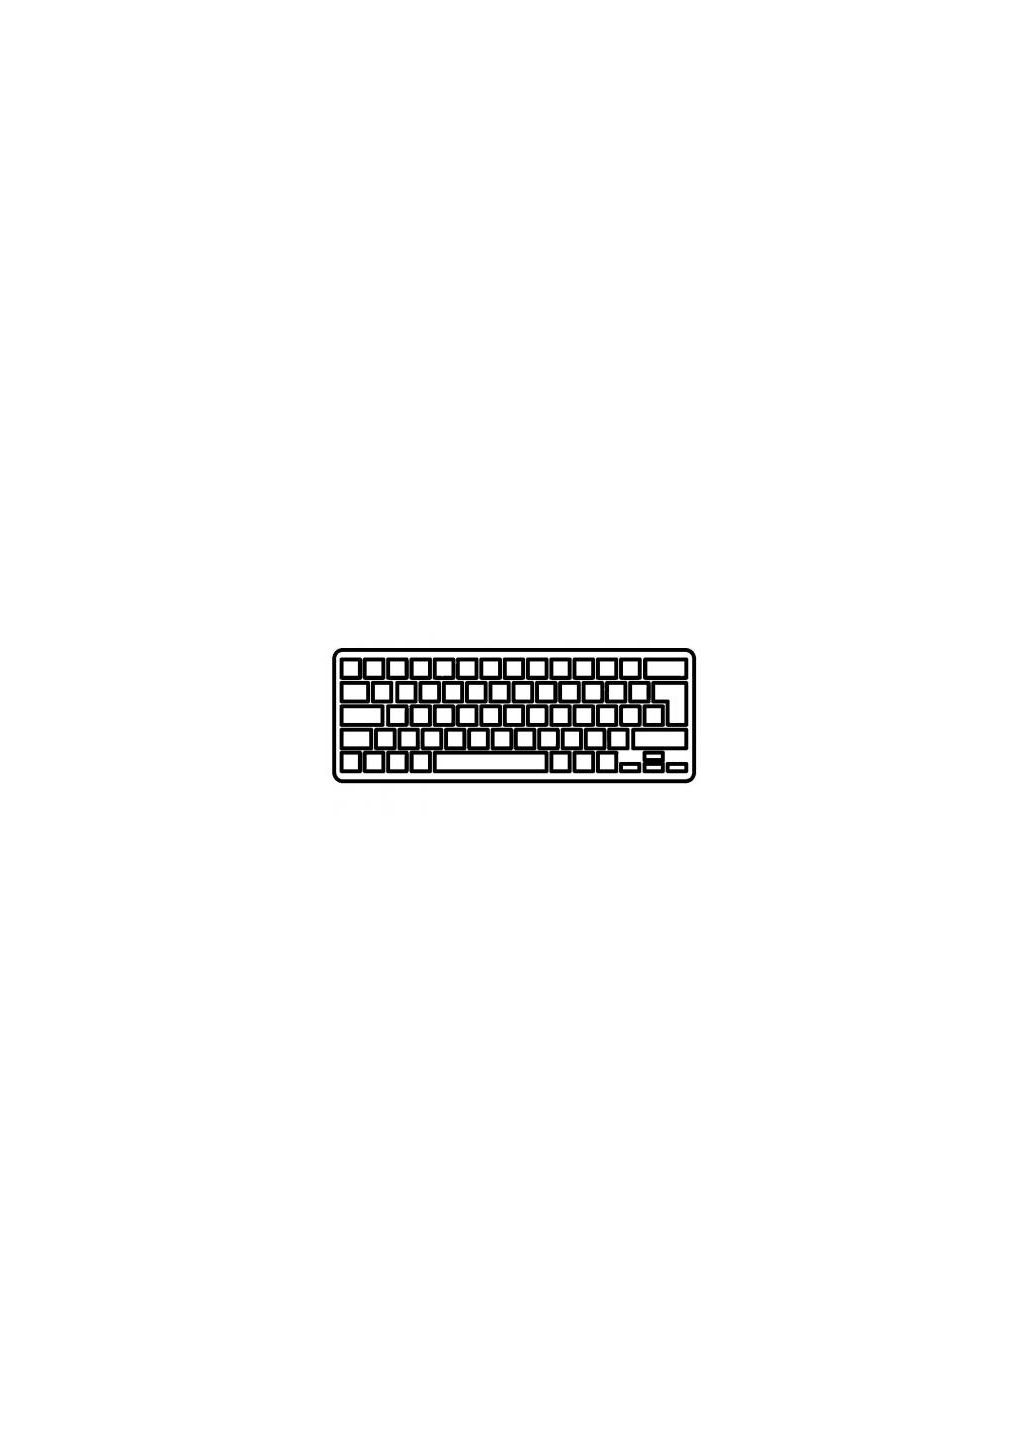 Клавиатура ноутбука Eee PC 1015PE black,UA/US в сборе,black,frame,PWR.BTN (A43787) Asus eee pc 1015pe black, ua/us в сборе, black, frame, pwr. (276707871)